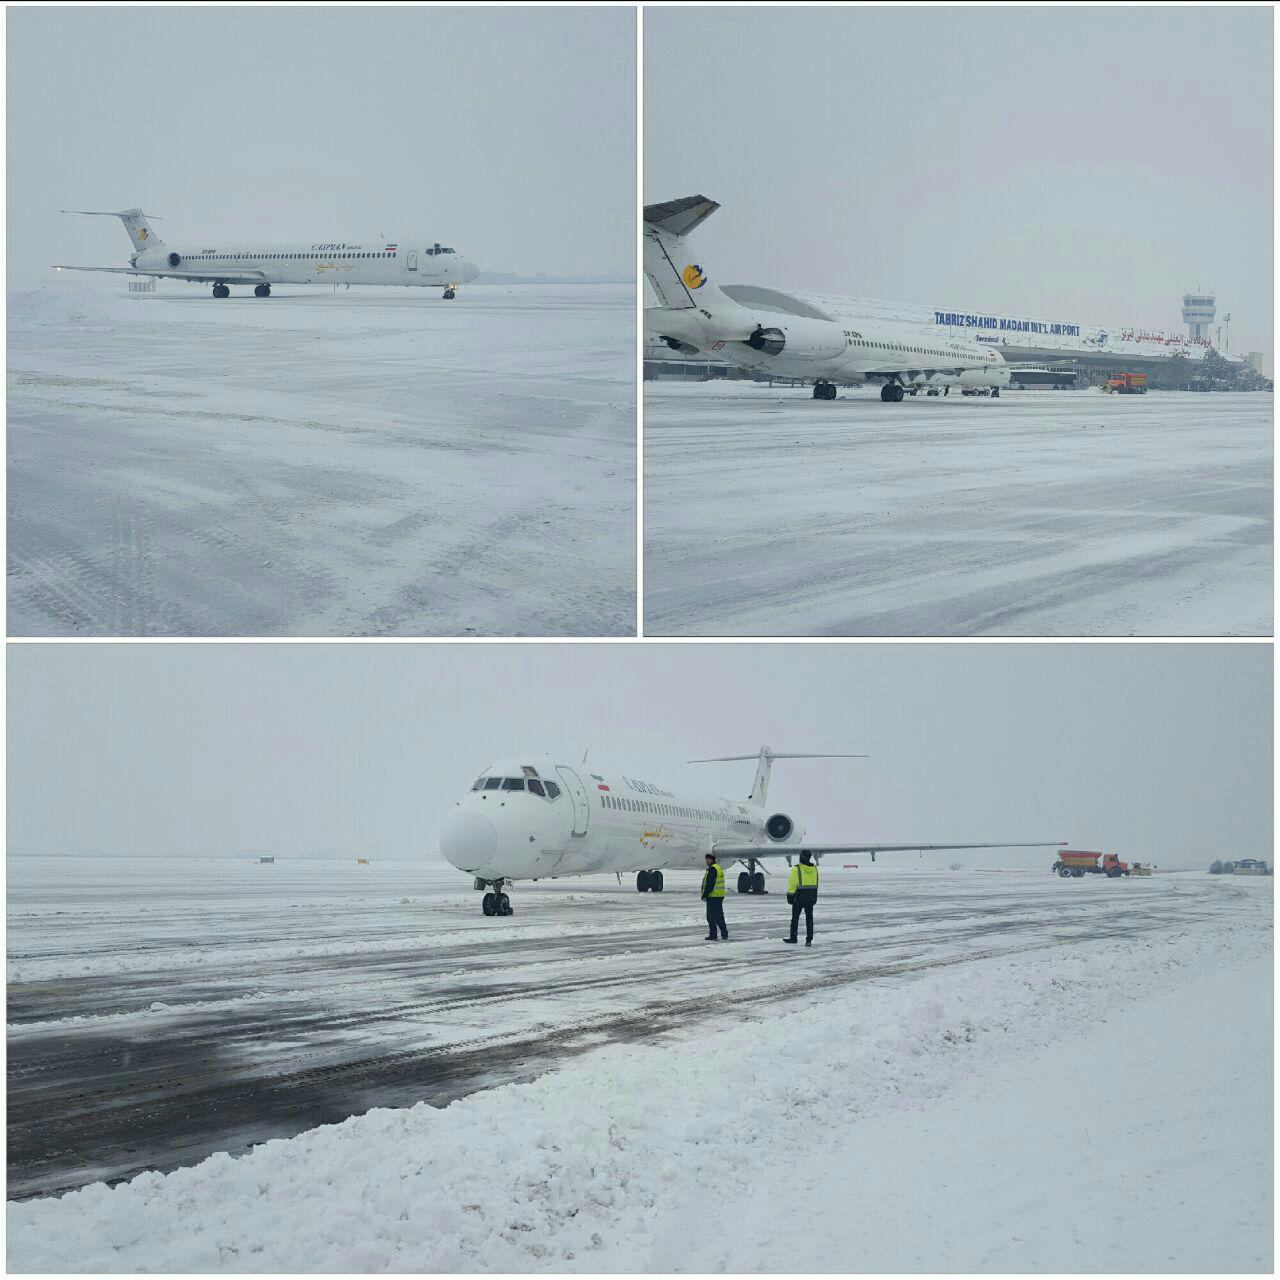 علی رغم بارش ۱۰ سانتی متری برف، پروازهای فرودگاه تبریز انجام شد